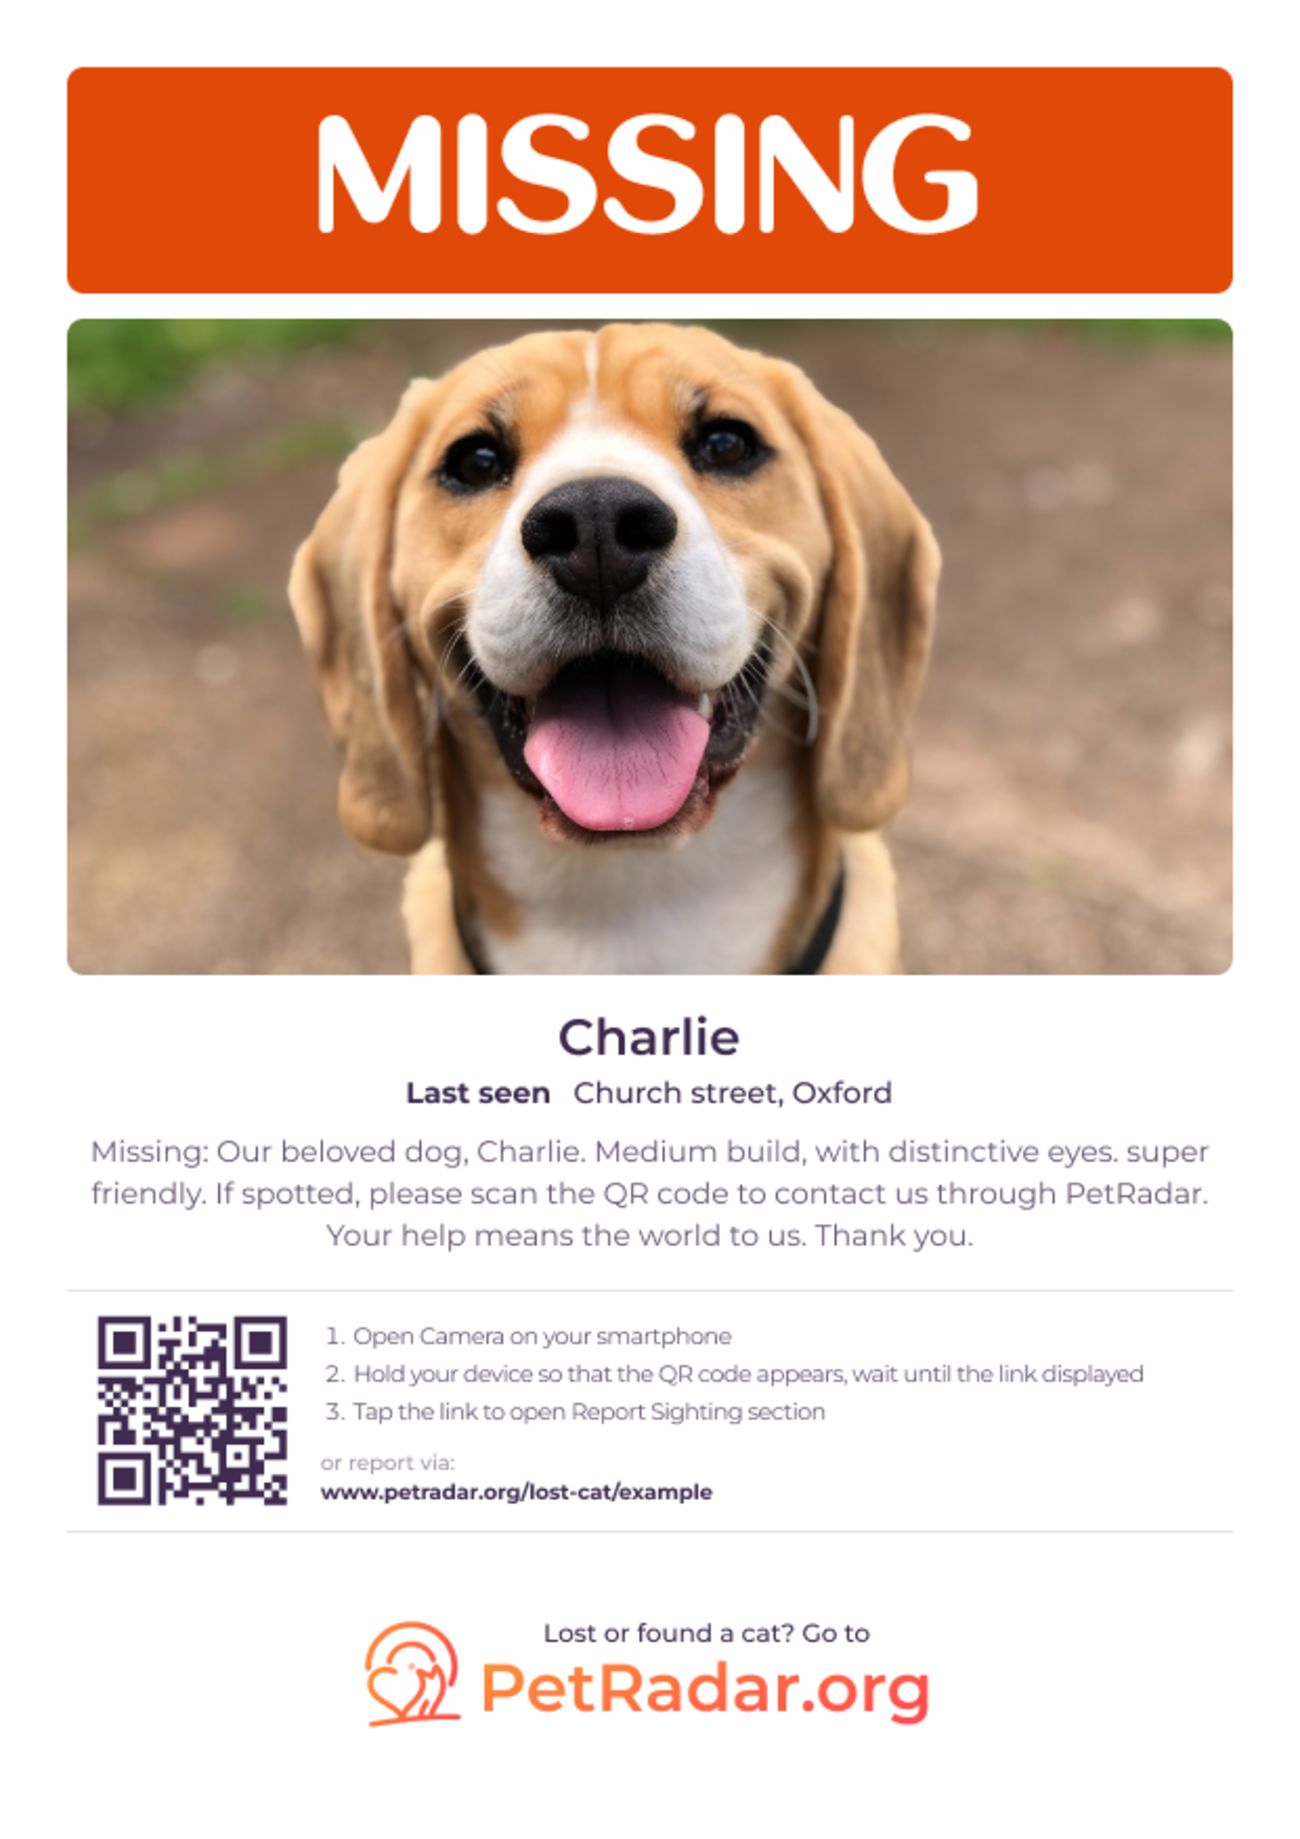 PetRadars kostenlos herunterladbares und druckbares Vermisst-Plakat für Hunde